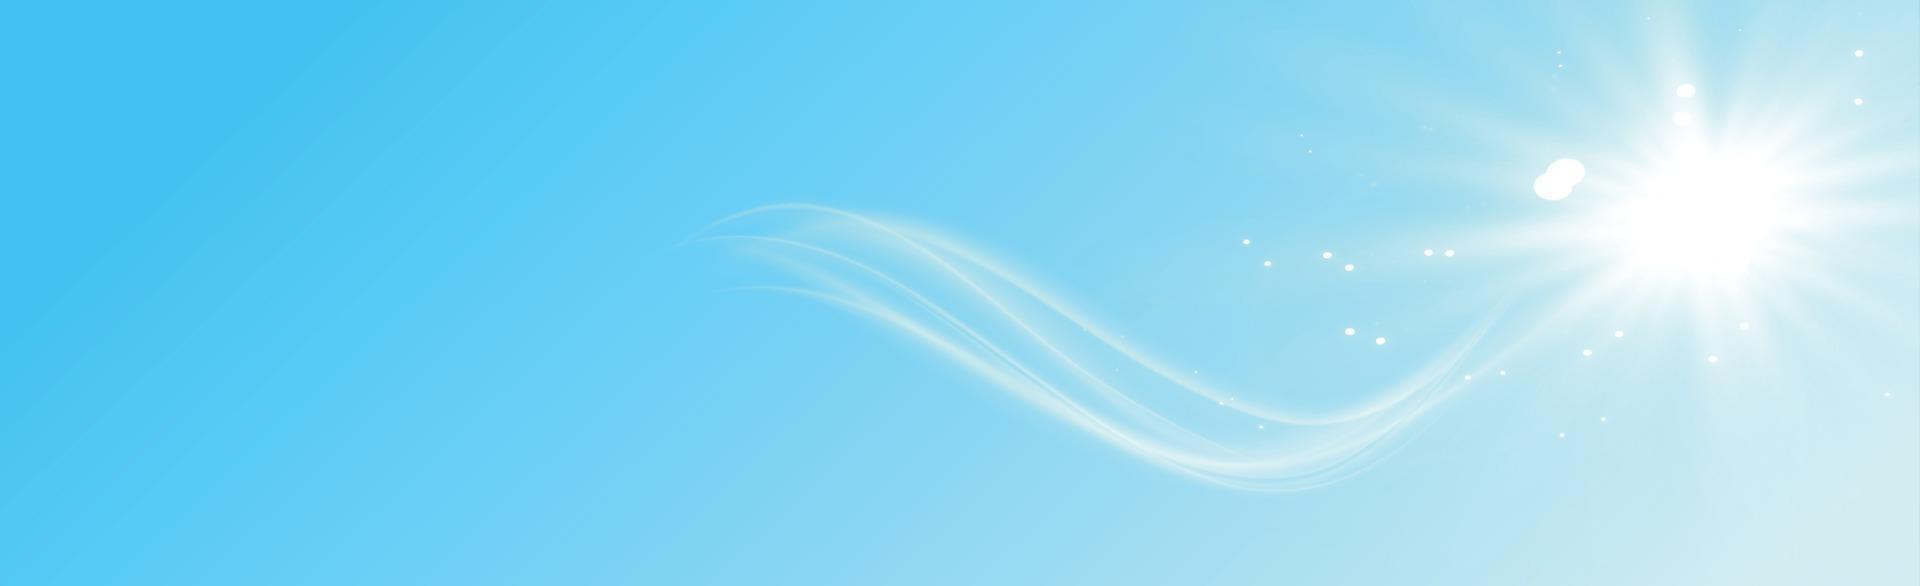 Fond ensoleillé panoramique de couleur bleu tendre - illustration vecteur